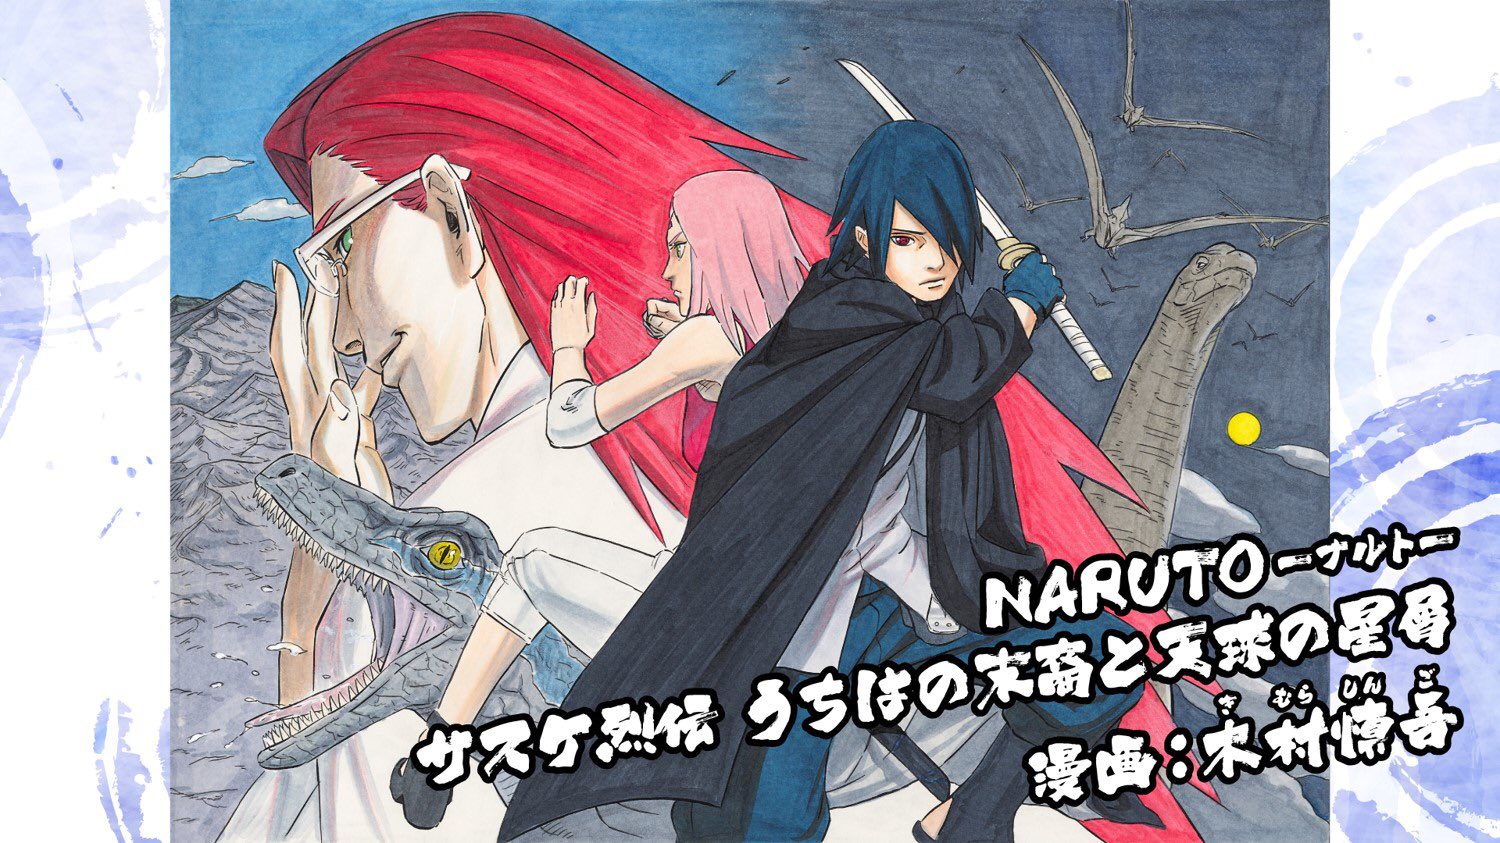 Duas novels de Naruto vão ganhar versão em mangá, incluindo Sasuke Restsuden FG3XzBragAQ-BEK?format=jpg&name=large